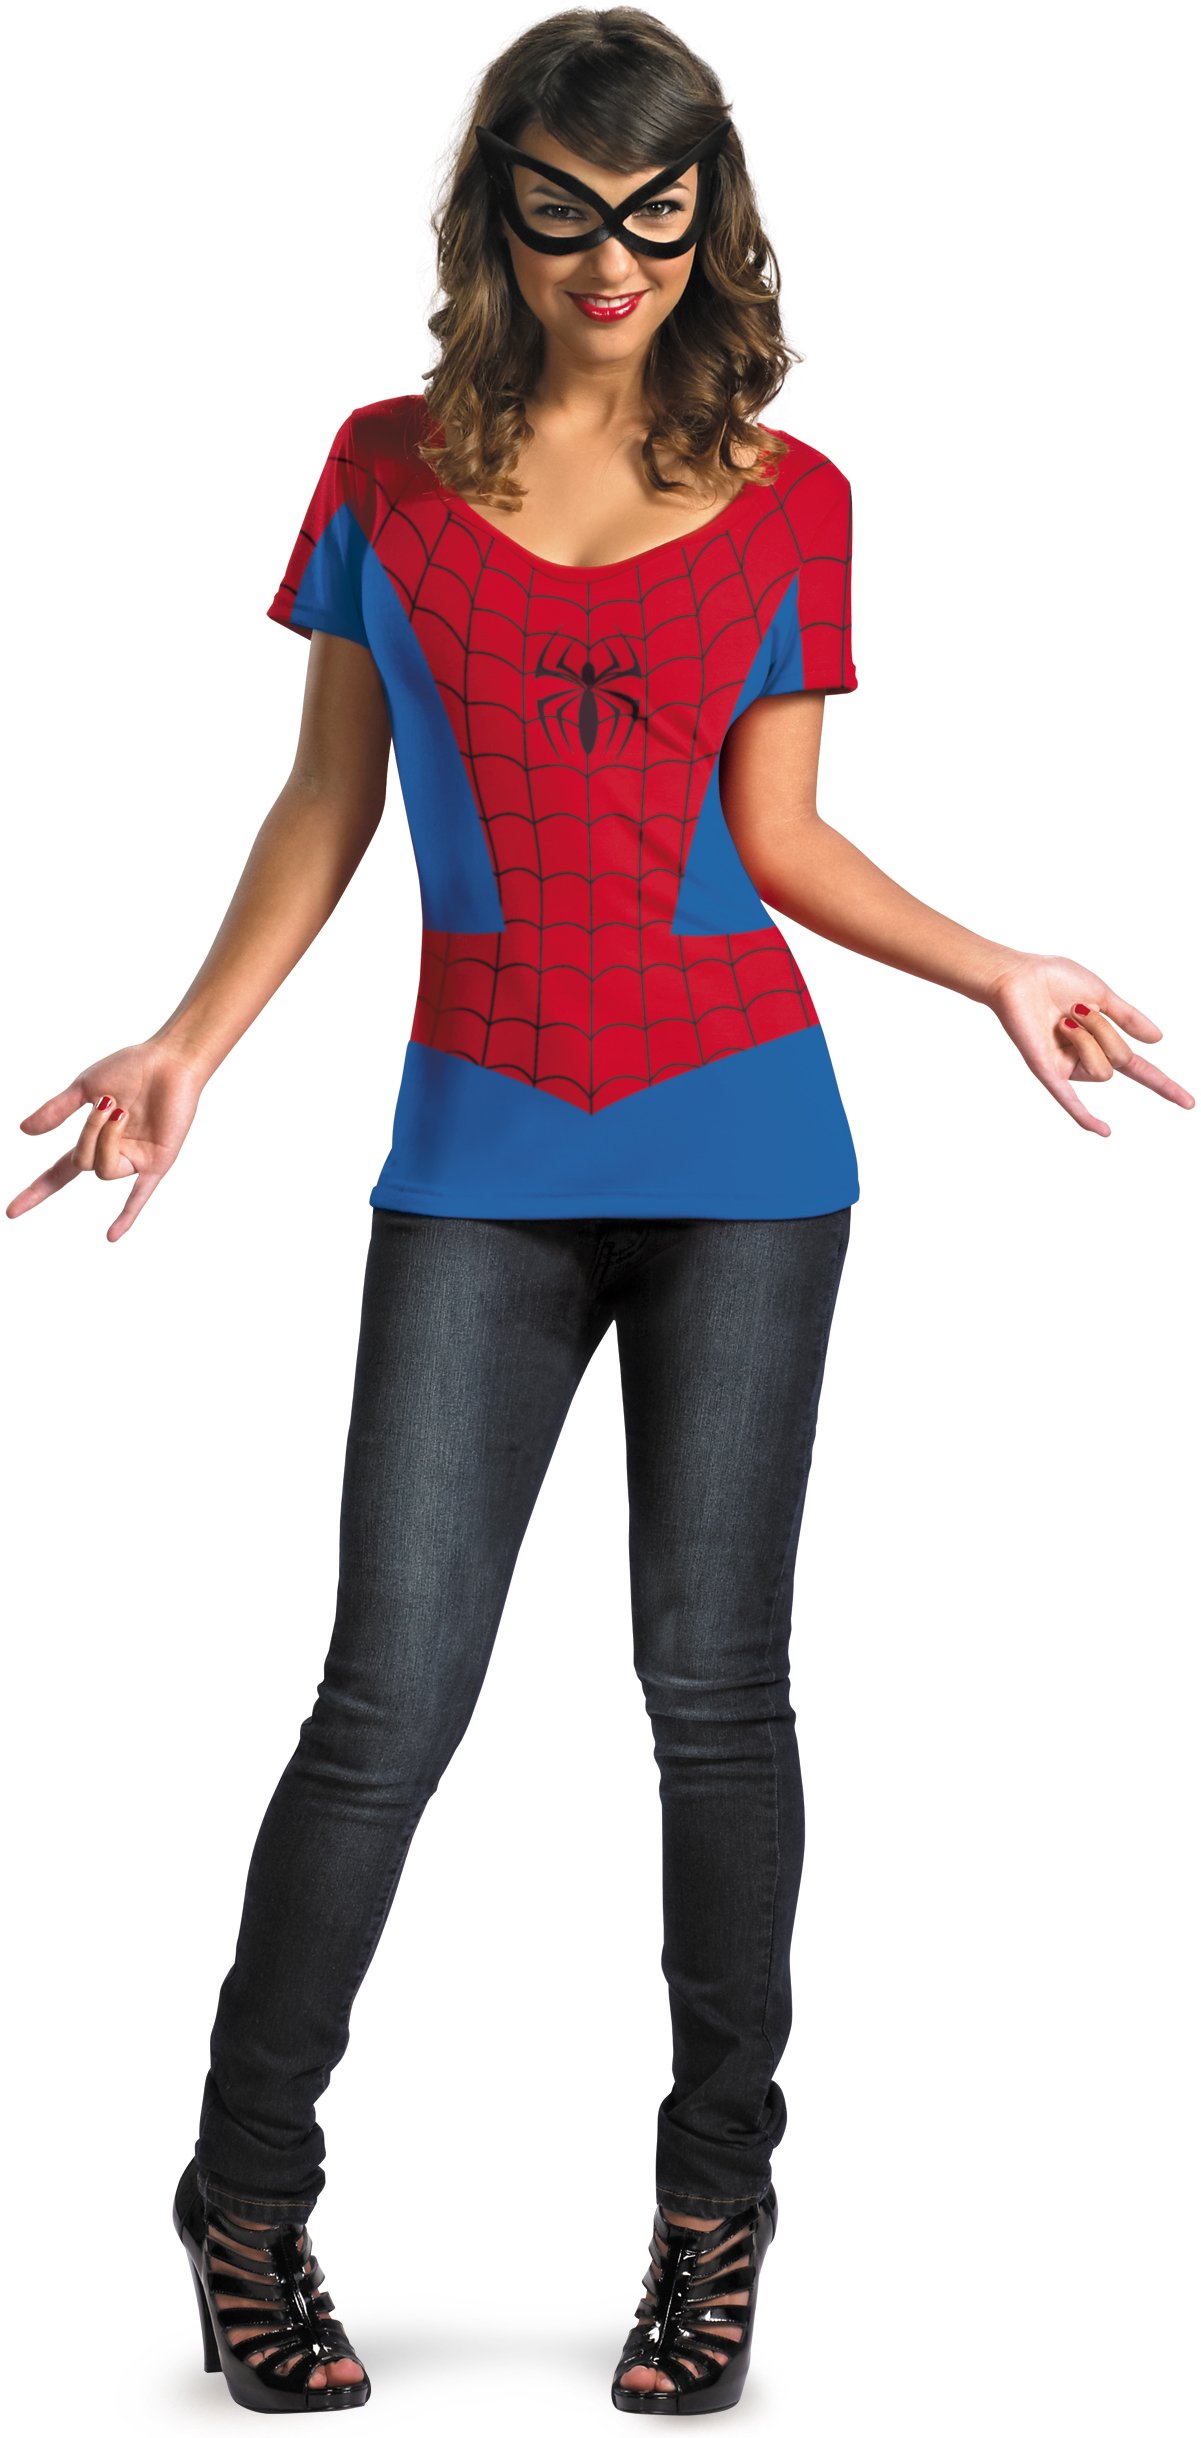 Spider-Girl Adult Costume Kit